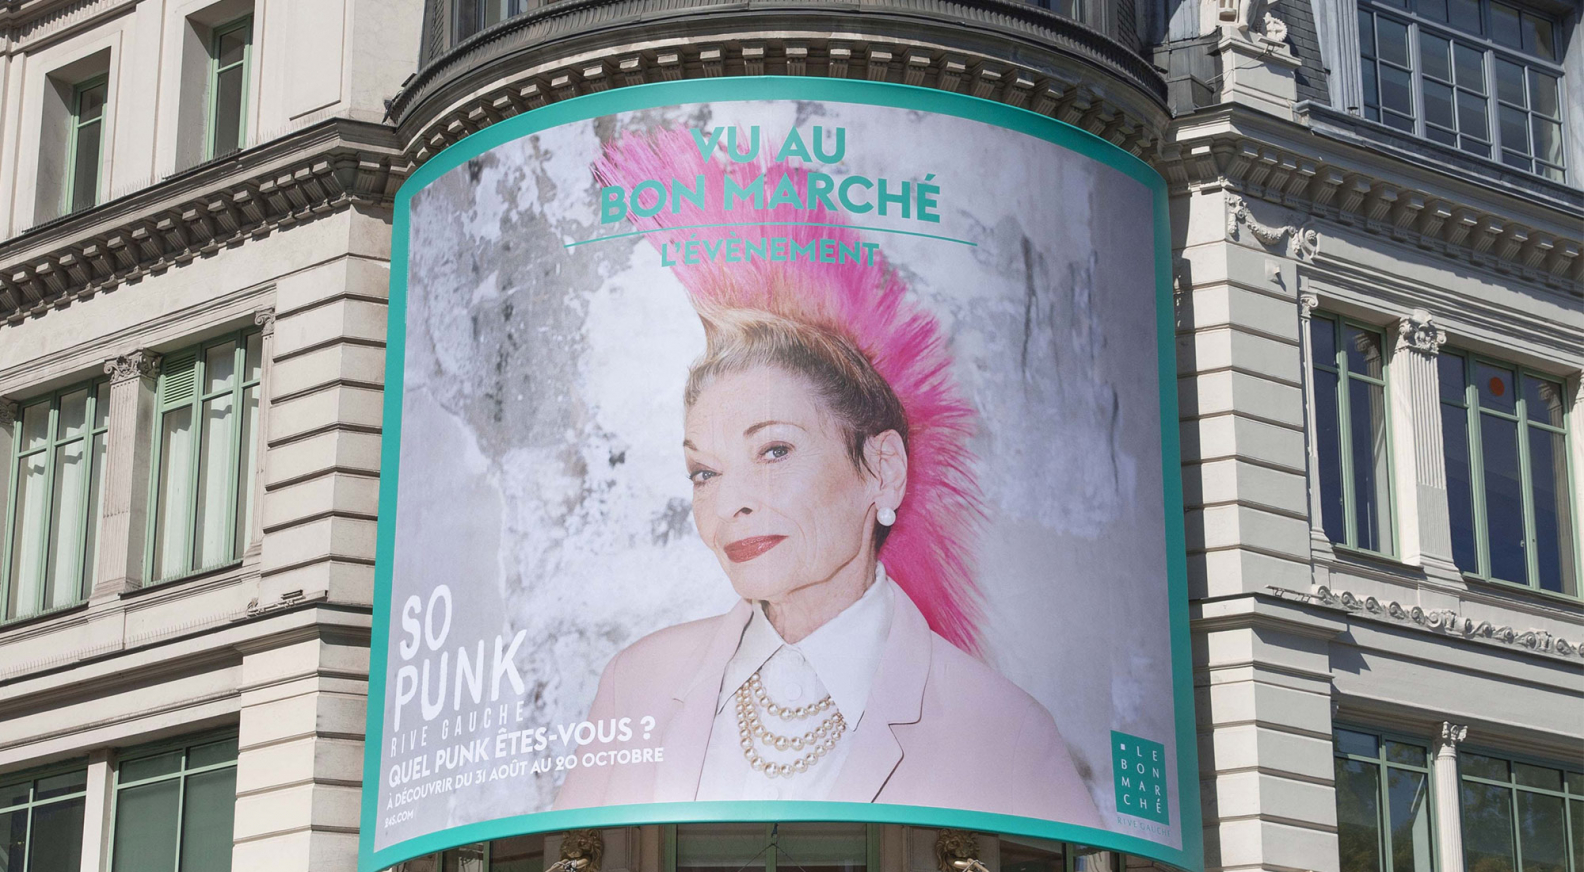 Maquillage, Le Bon Marché, And My Paris Project